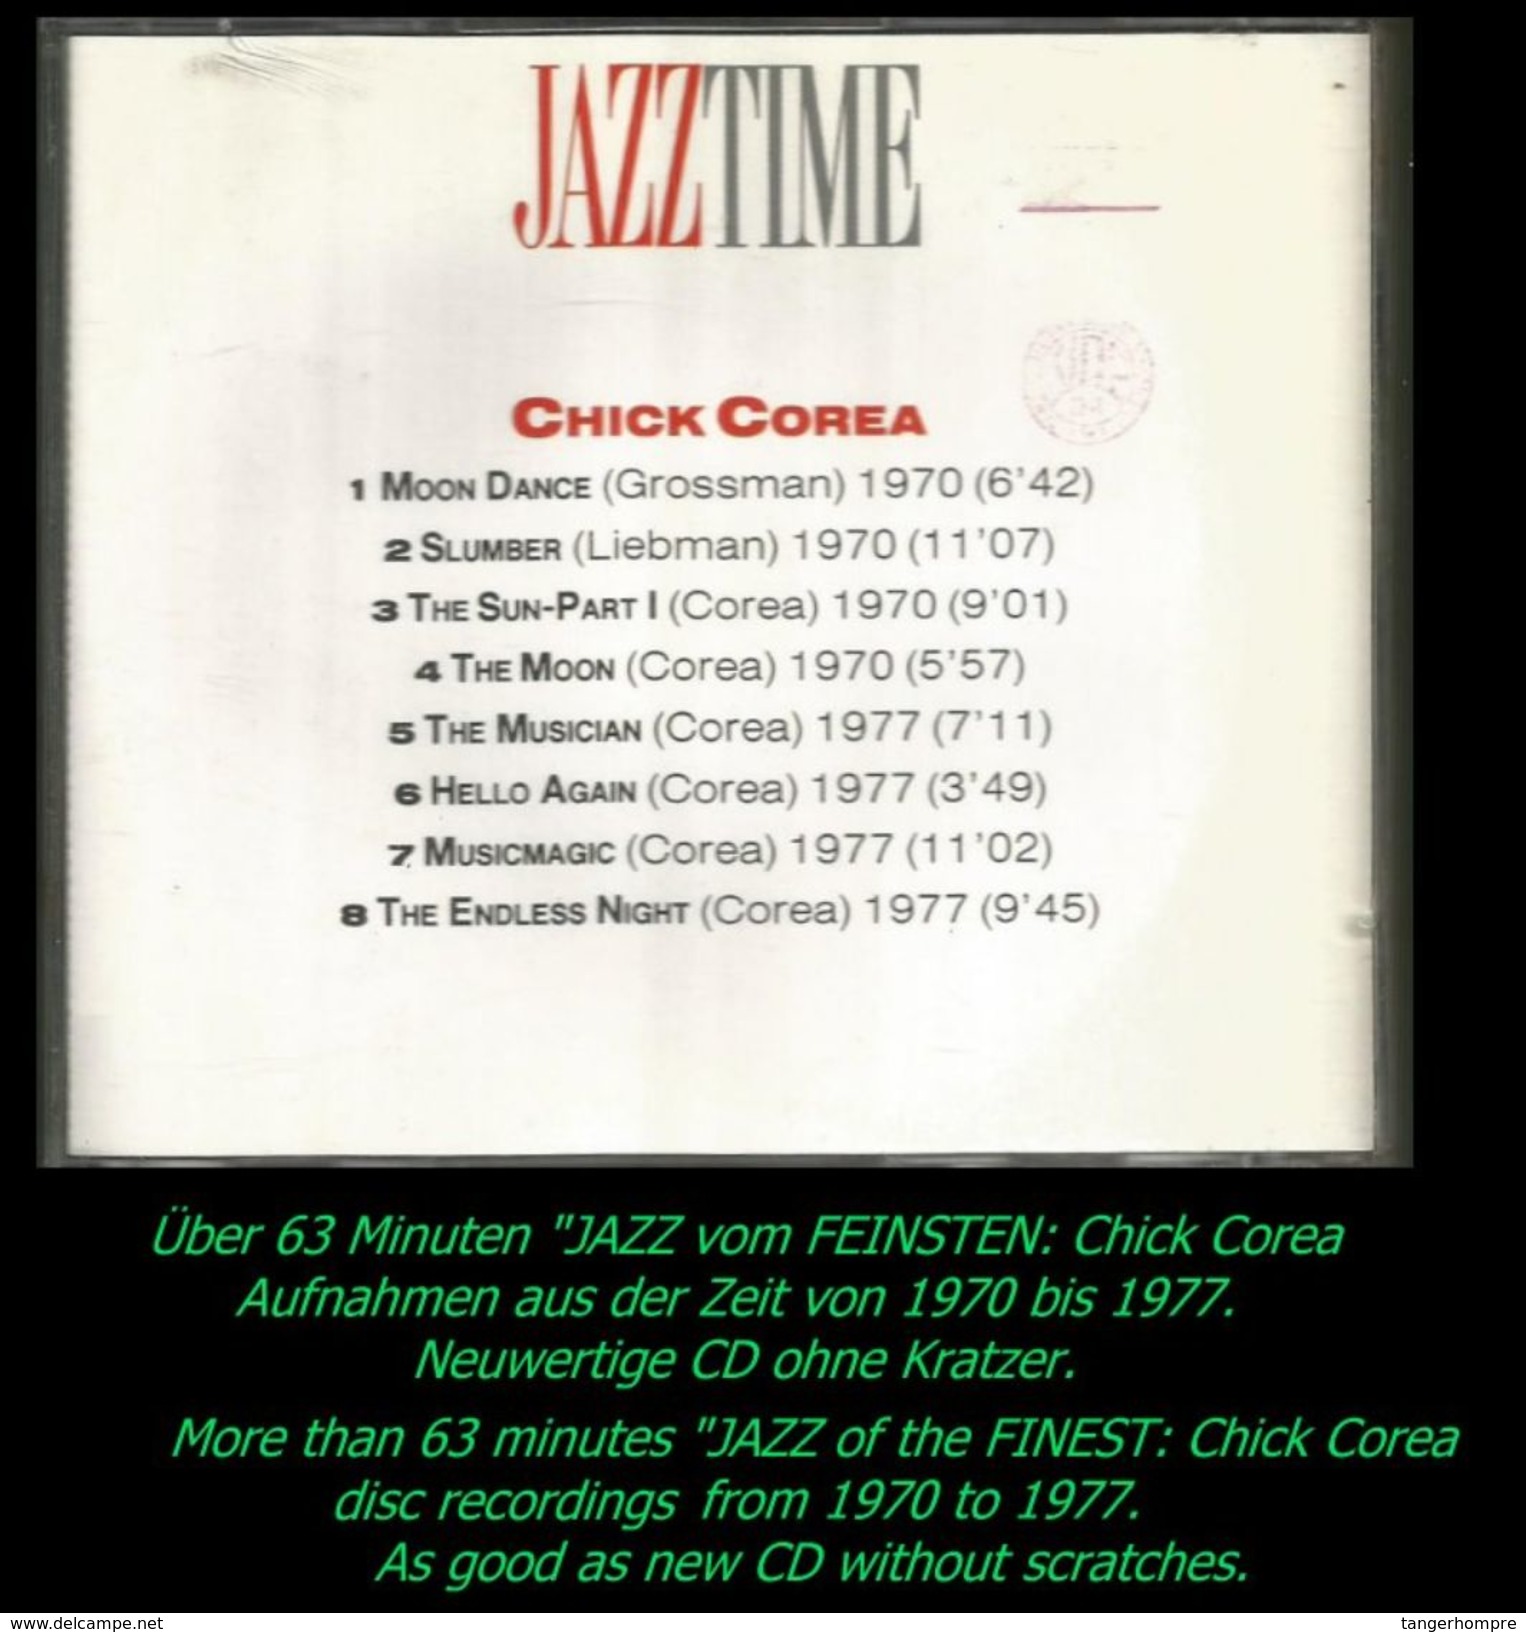 über 60 Minuten Jazz Von Chick Corea Von 1970 - 77 - Jazz Of Finest From 1970 - 77 - Jazz